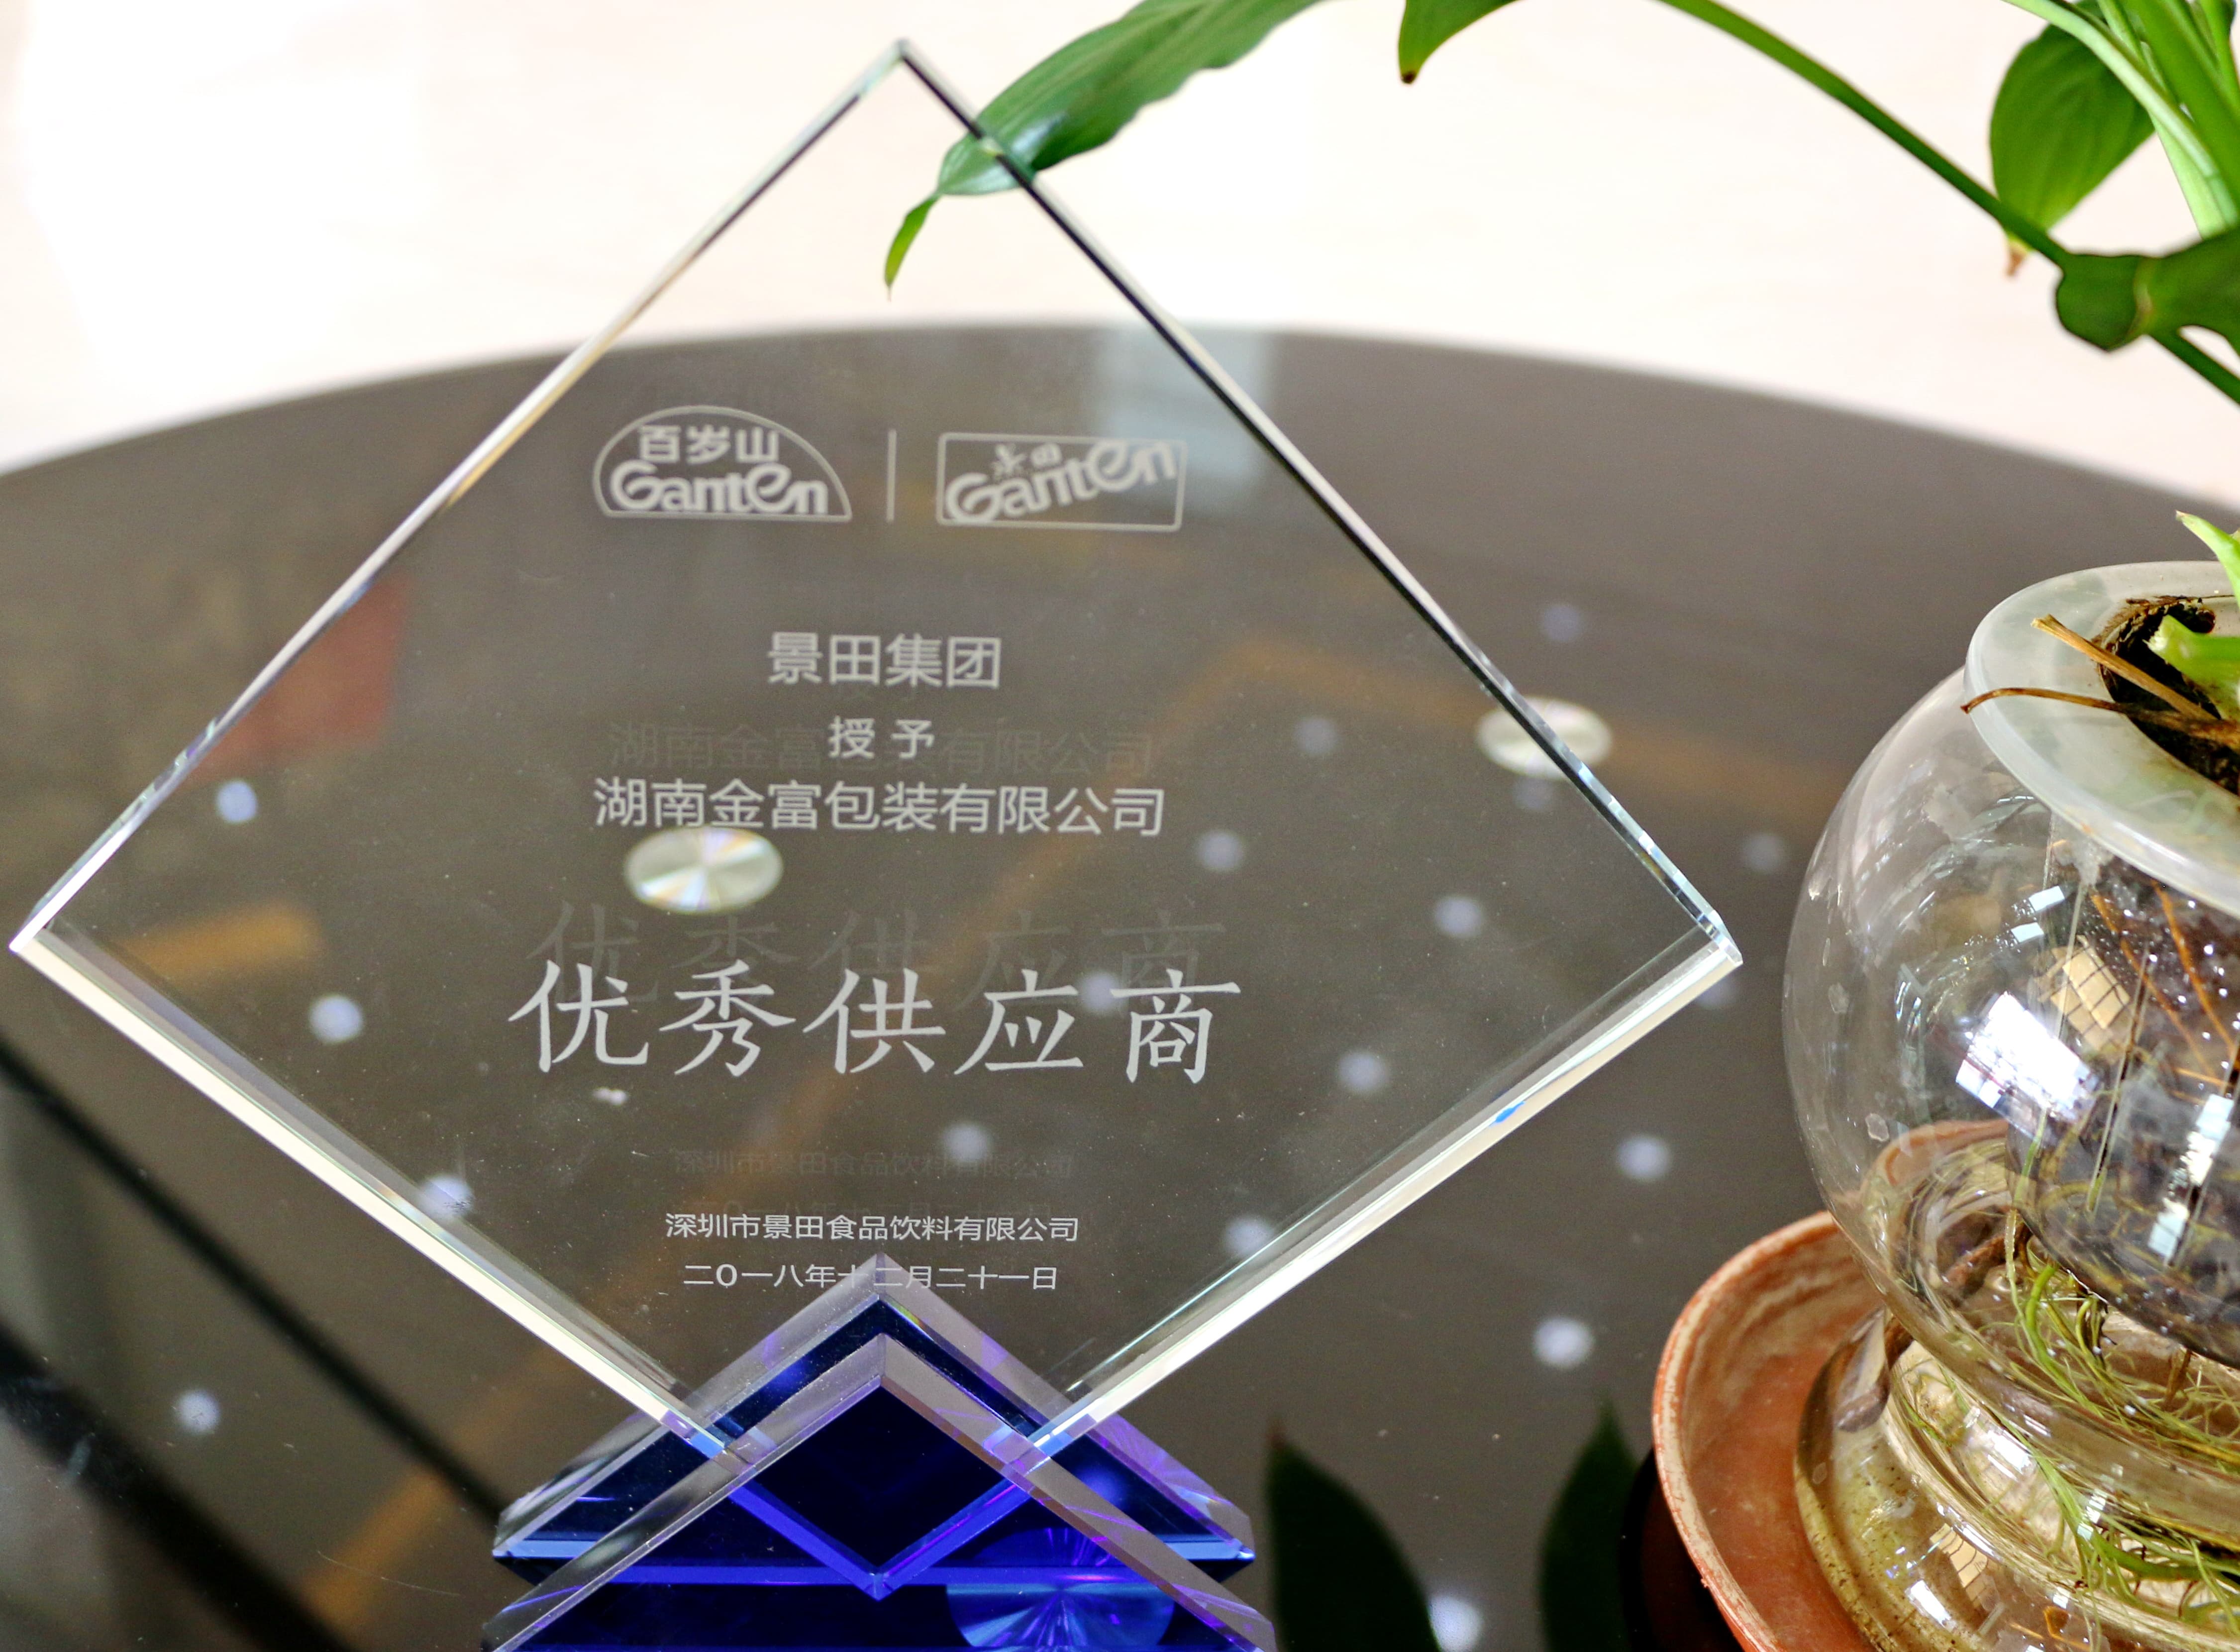 Outstanding Supplier of the Year 2018 (Jingtian awarded to Hunan Jinfu)